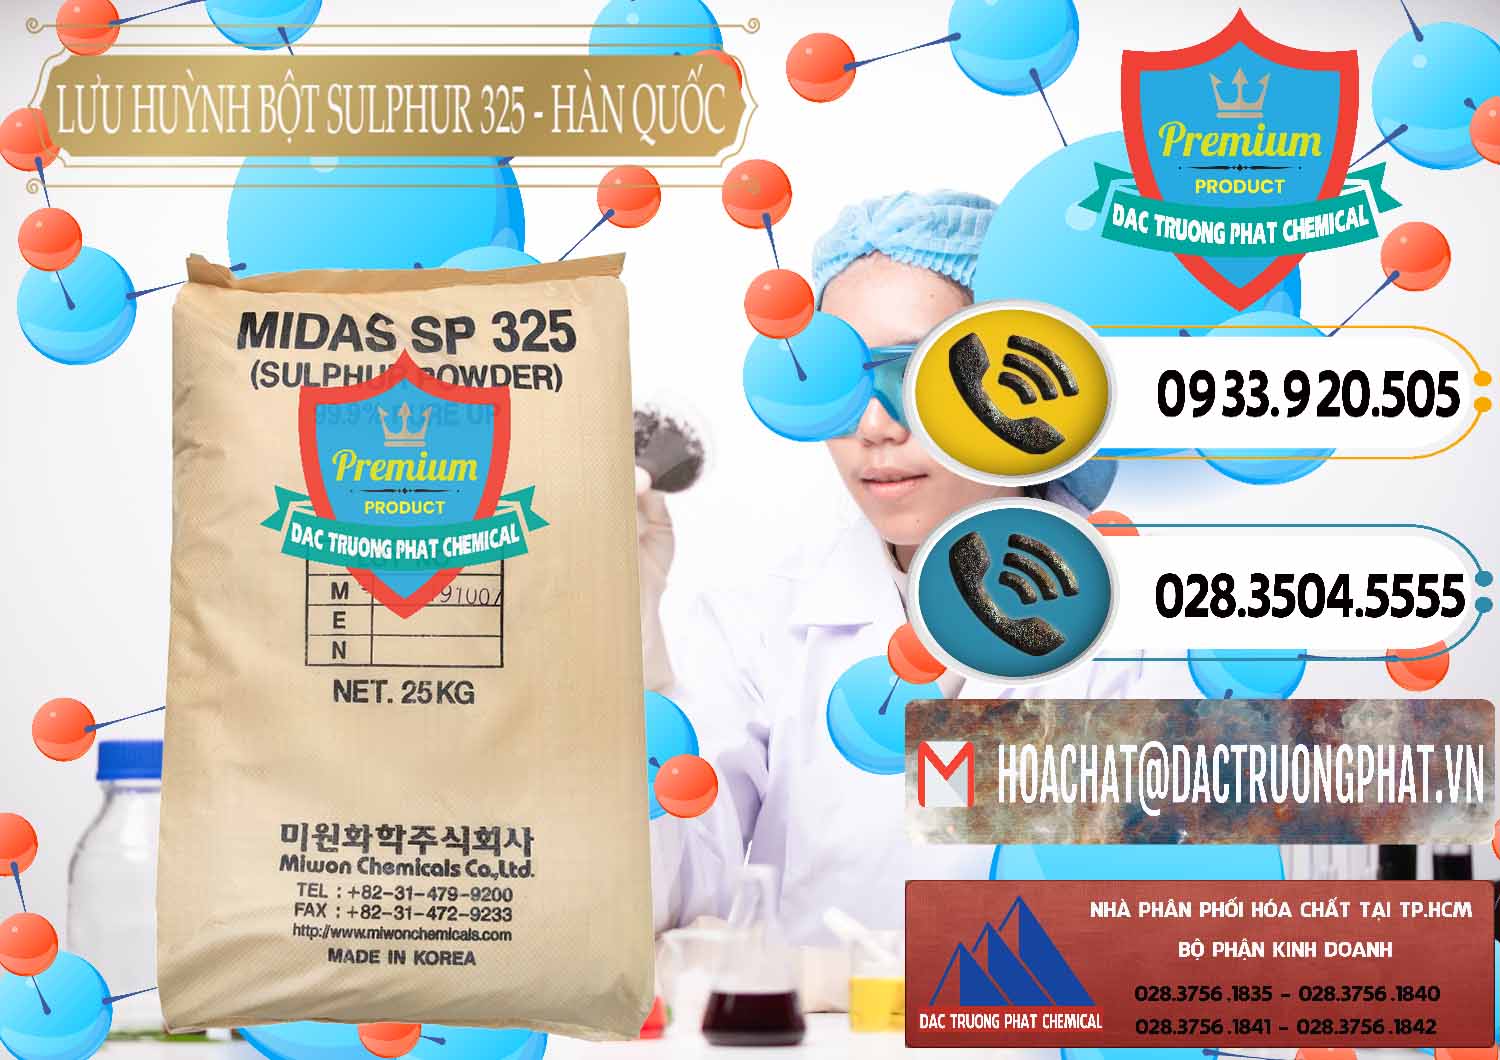 Công ty bán & cung ứng Lưu huỳnh Bột - Sulfur Powder Midas SP 325 Hàn Quốc Korea - 0198 - Cung cấp và phân phối hóa chất tại TP.HCM - hoachatdetnhuom.vn